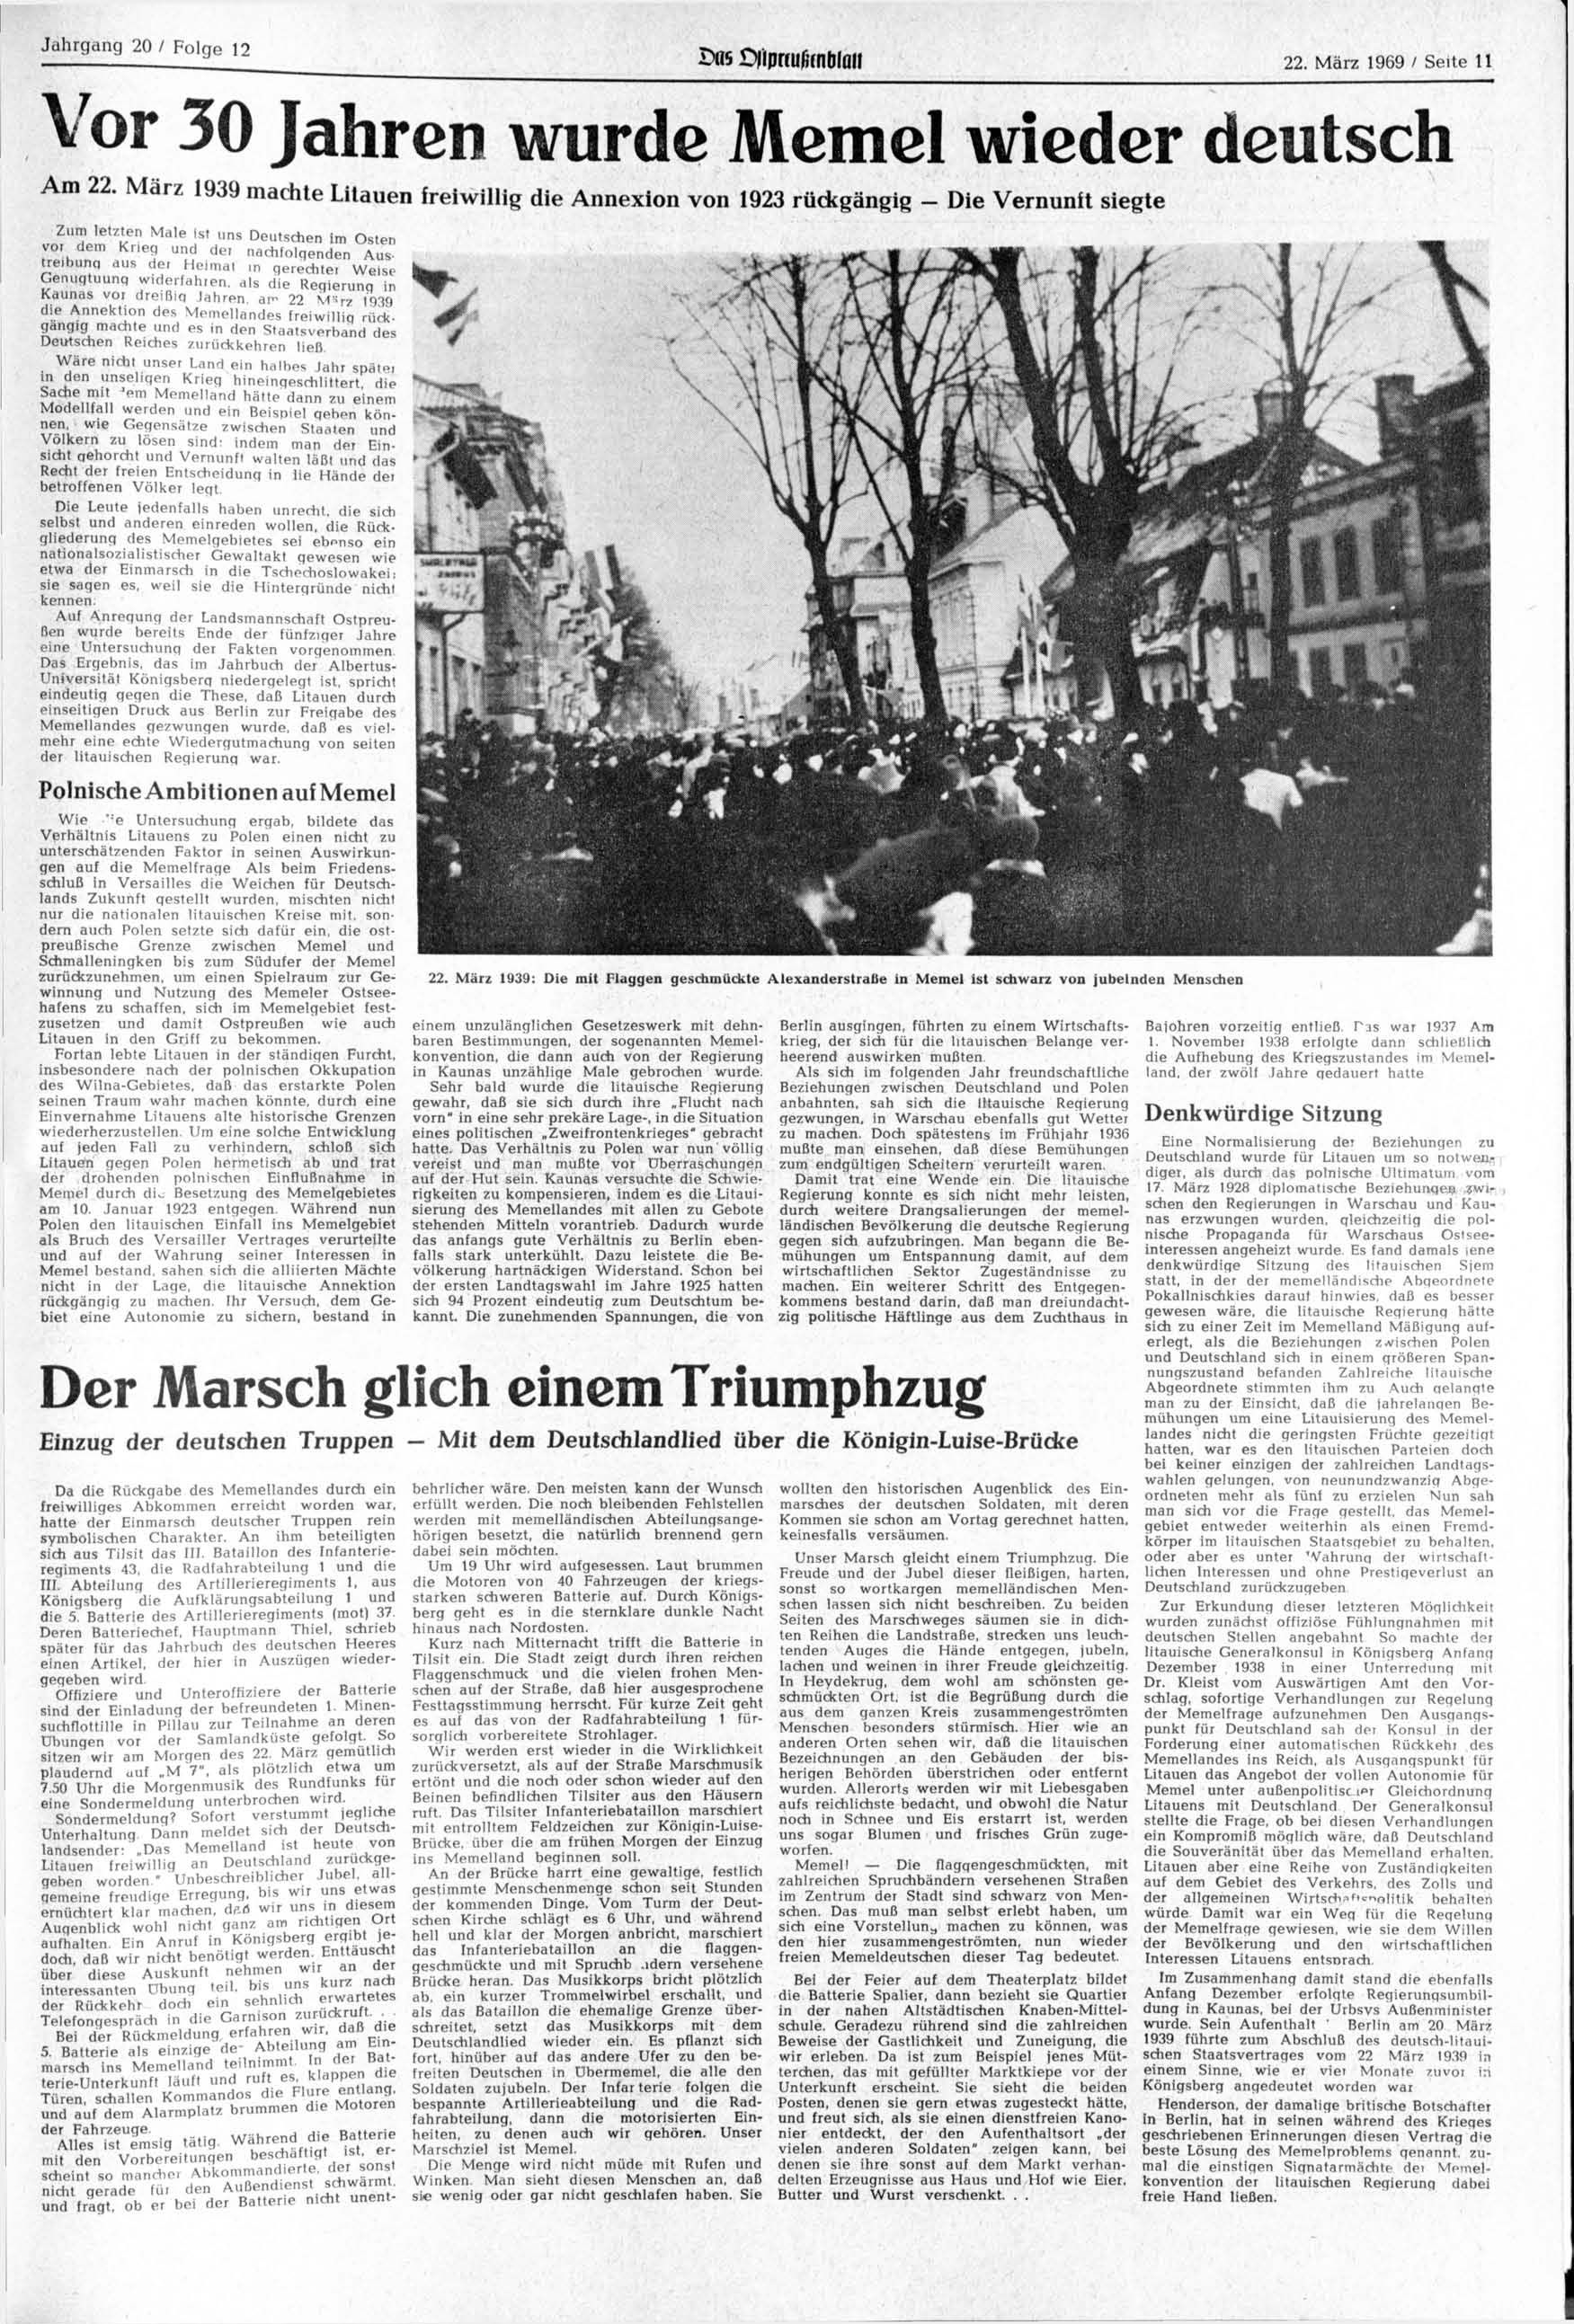 Jahrgang 20 / Folge 12 Sas jipkufjfnb.an 22. 1969 / Seite 11 Vor 30 Jahren wurde Memel wieder deutsch Am 22.